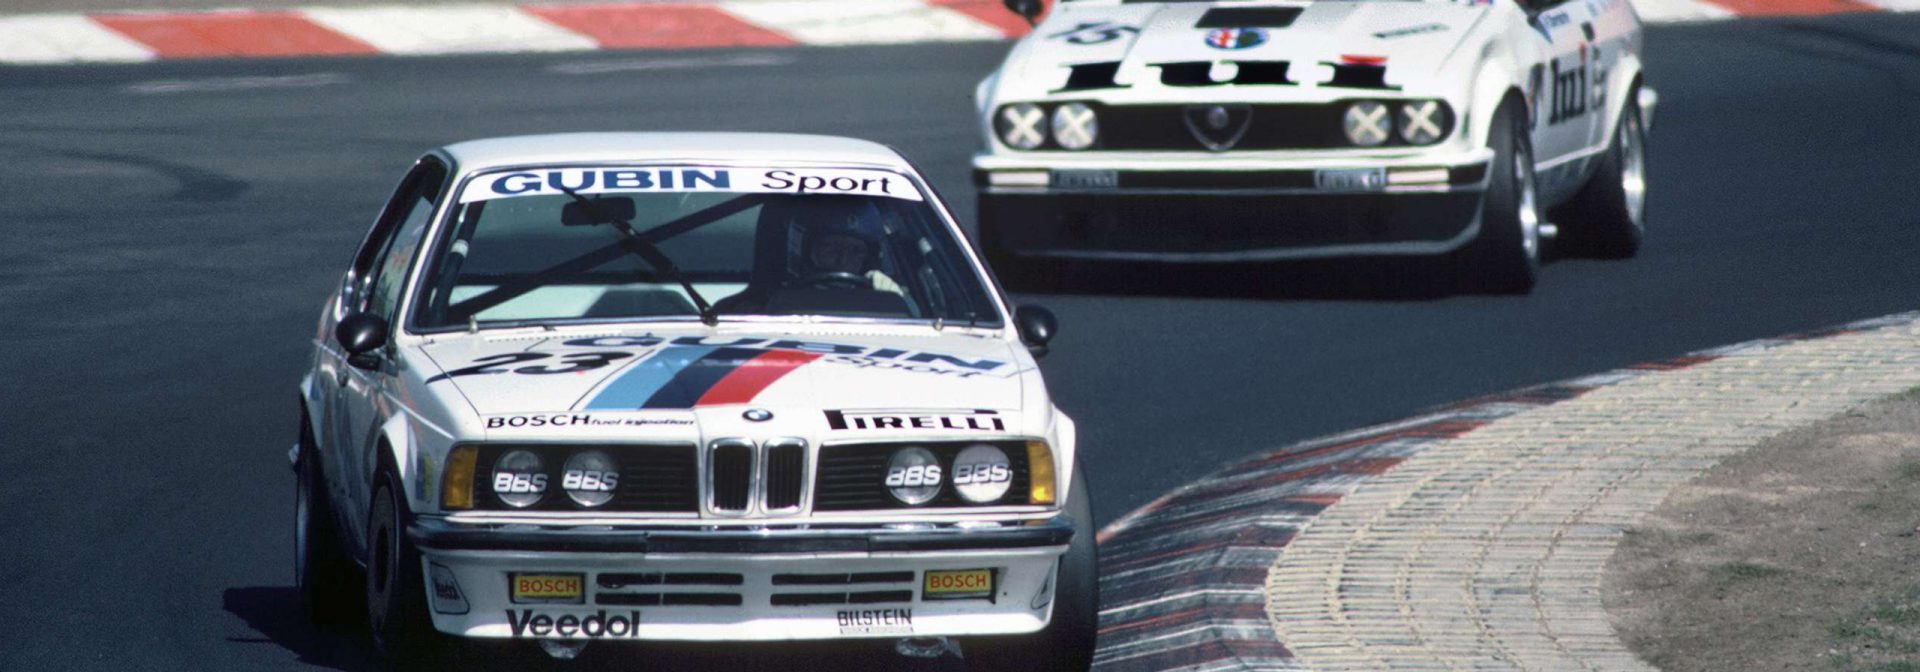 BMW 635CSi Gruppe A mit Volker Strycek vom Gubin-Team beim 8. Lauf zur Deutschen Produktionswagen-Meisterschaft 1984 am Nürburgring. Im Ergebnis belegte er Rang 4.